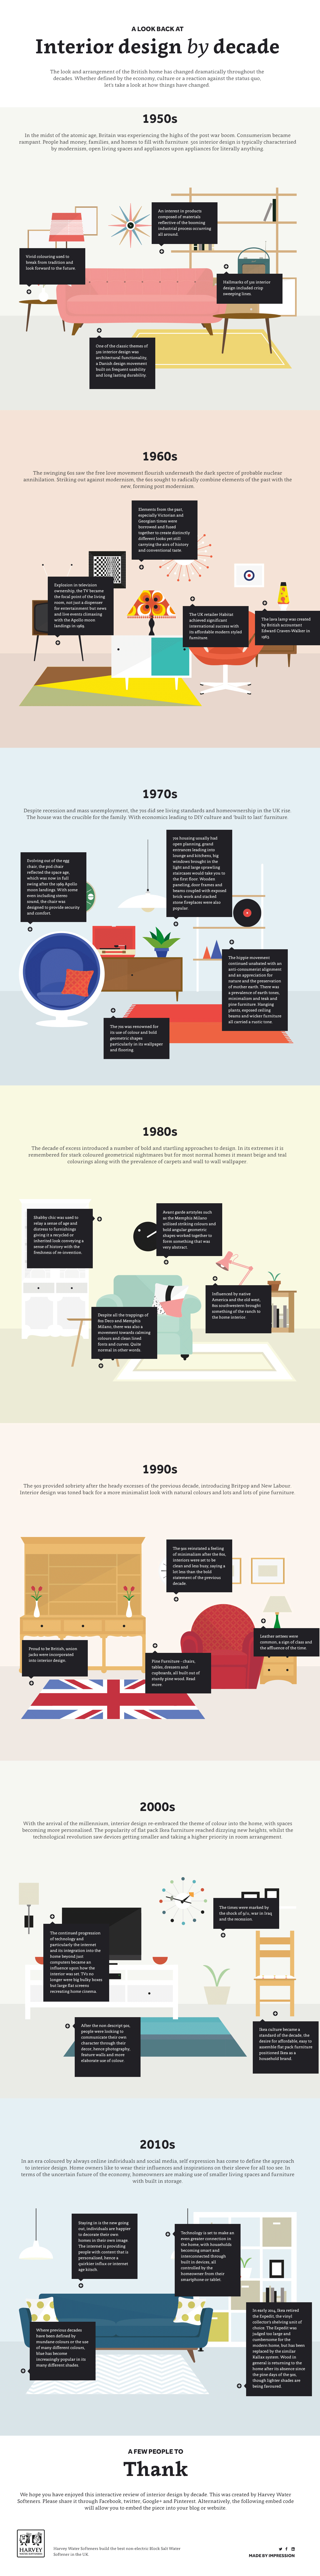 Infographic Grote veranderingen in de woonkamer 